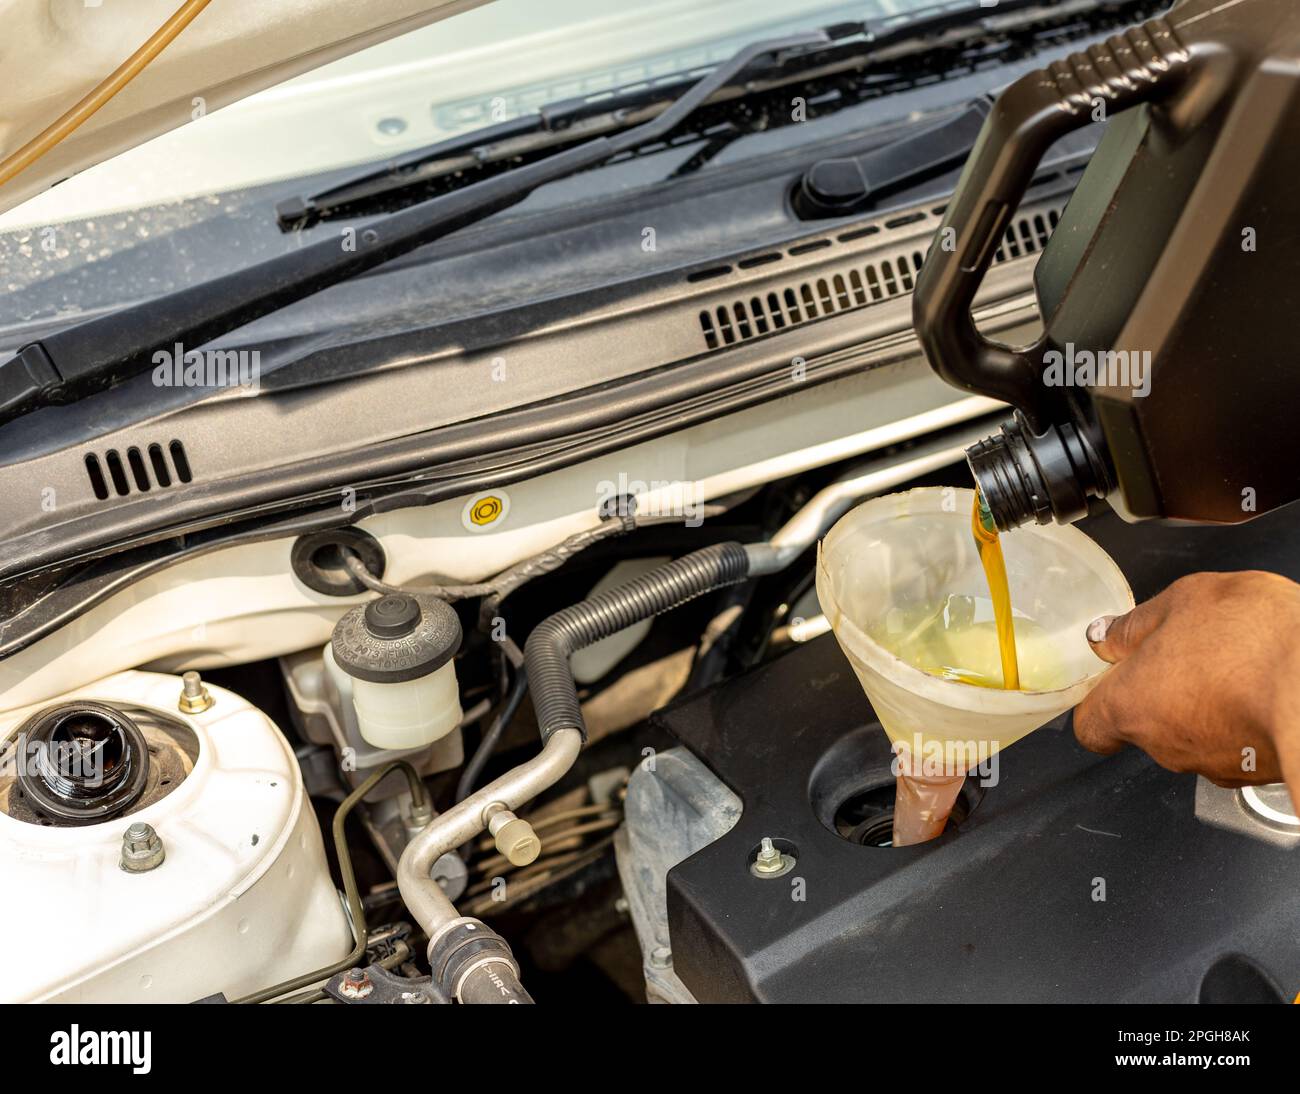 Mechaniker ist Ölwechsel im Auto mit alten Plastikflasche als Trichter  Stockfotografie - Alamy